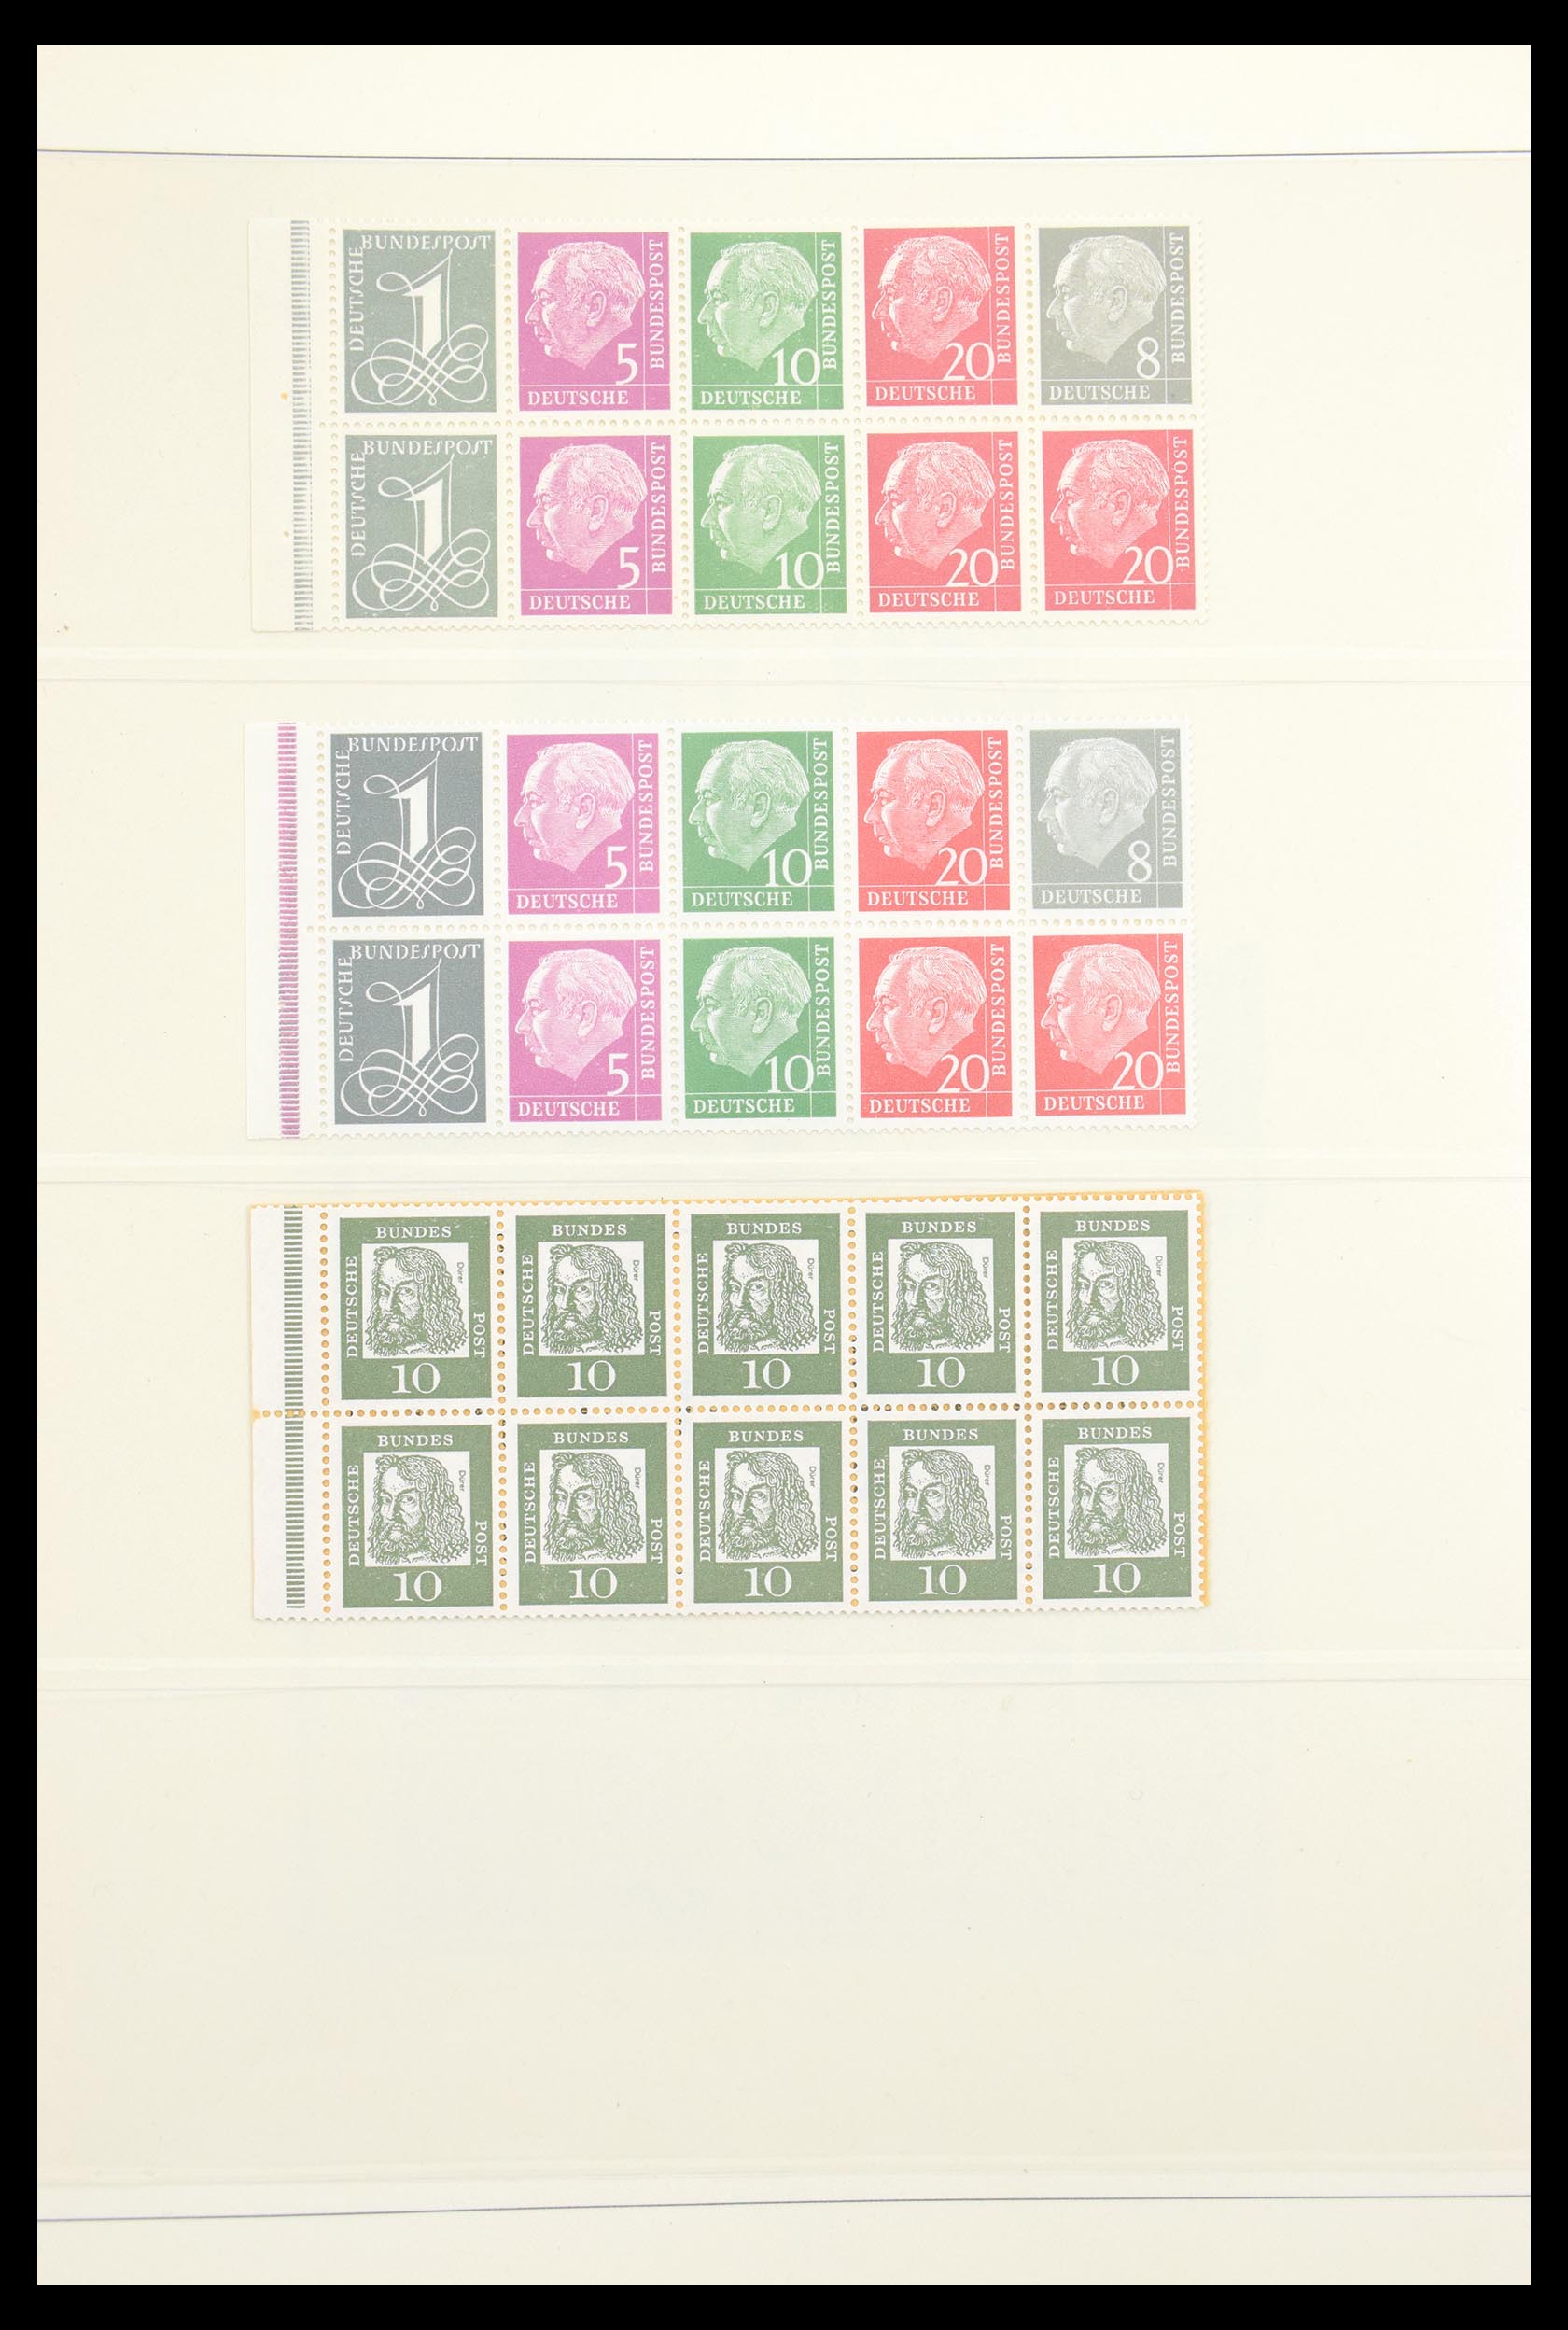 30605 016 - 30605 Bundespost combinaties 1951-1974.